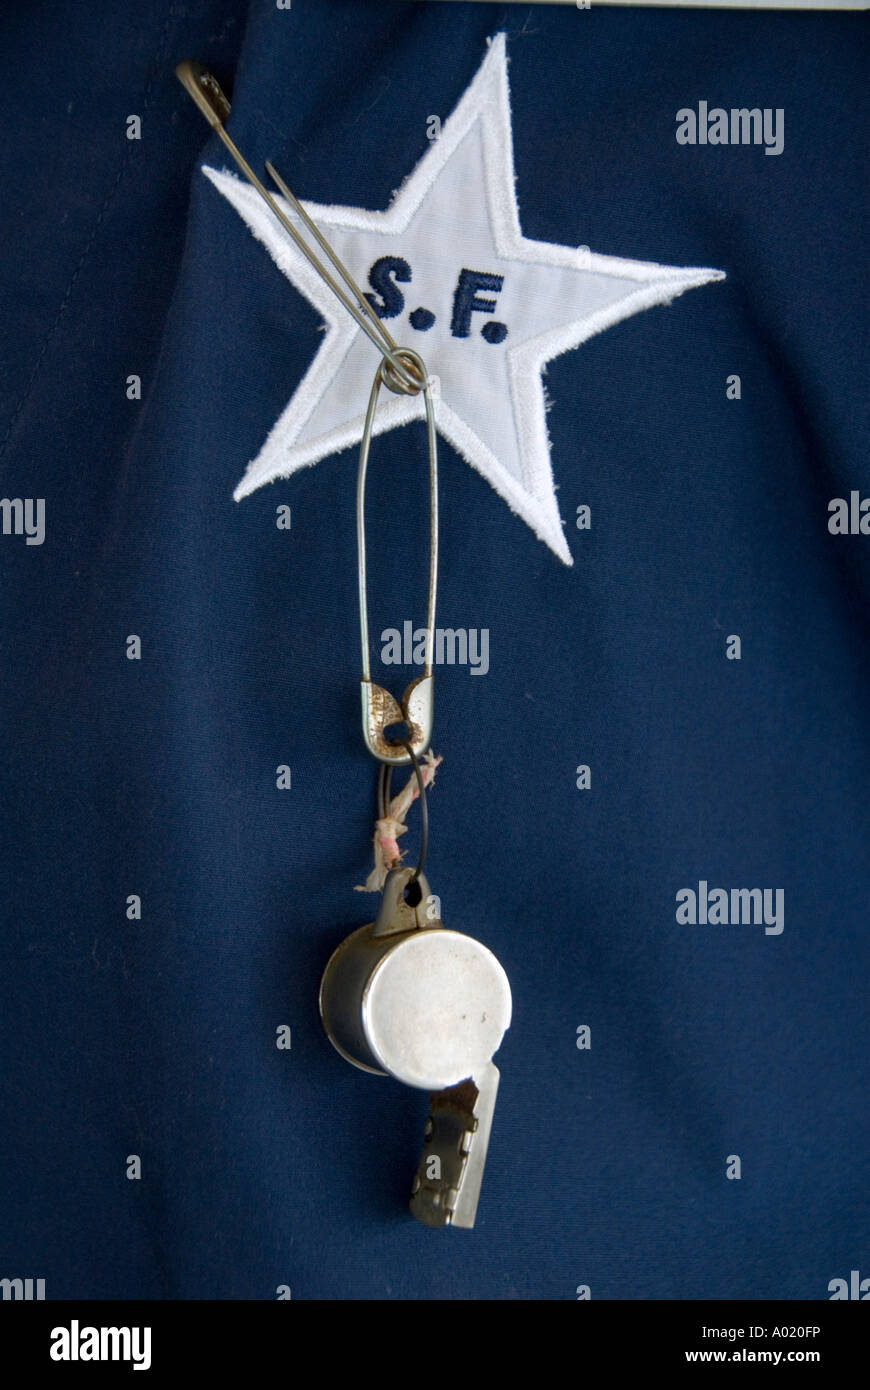 Dettaglio dell'uniforme del traghetto Star lavoratore con logo badge e fischio Foto Stock